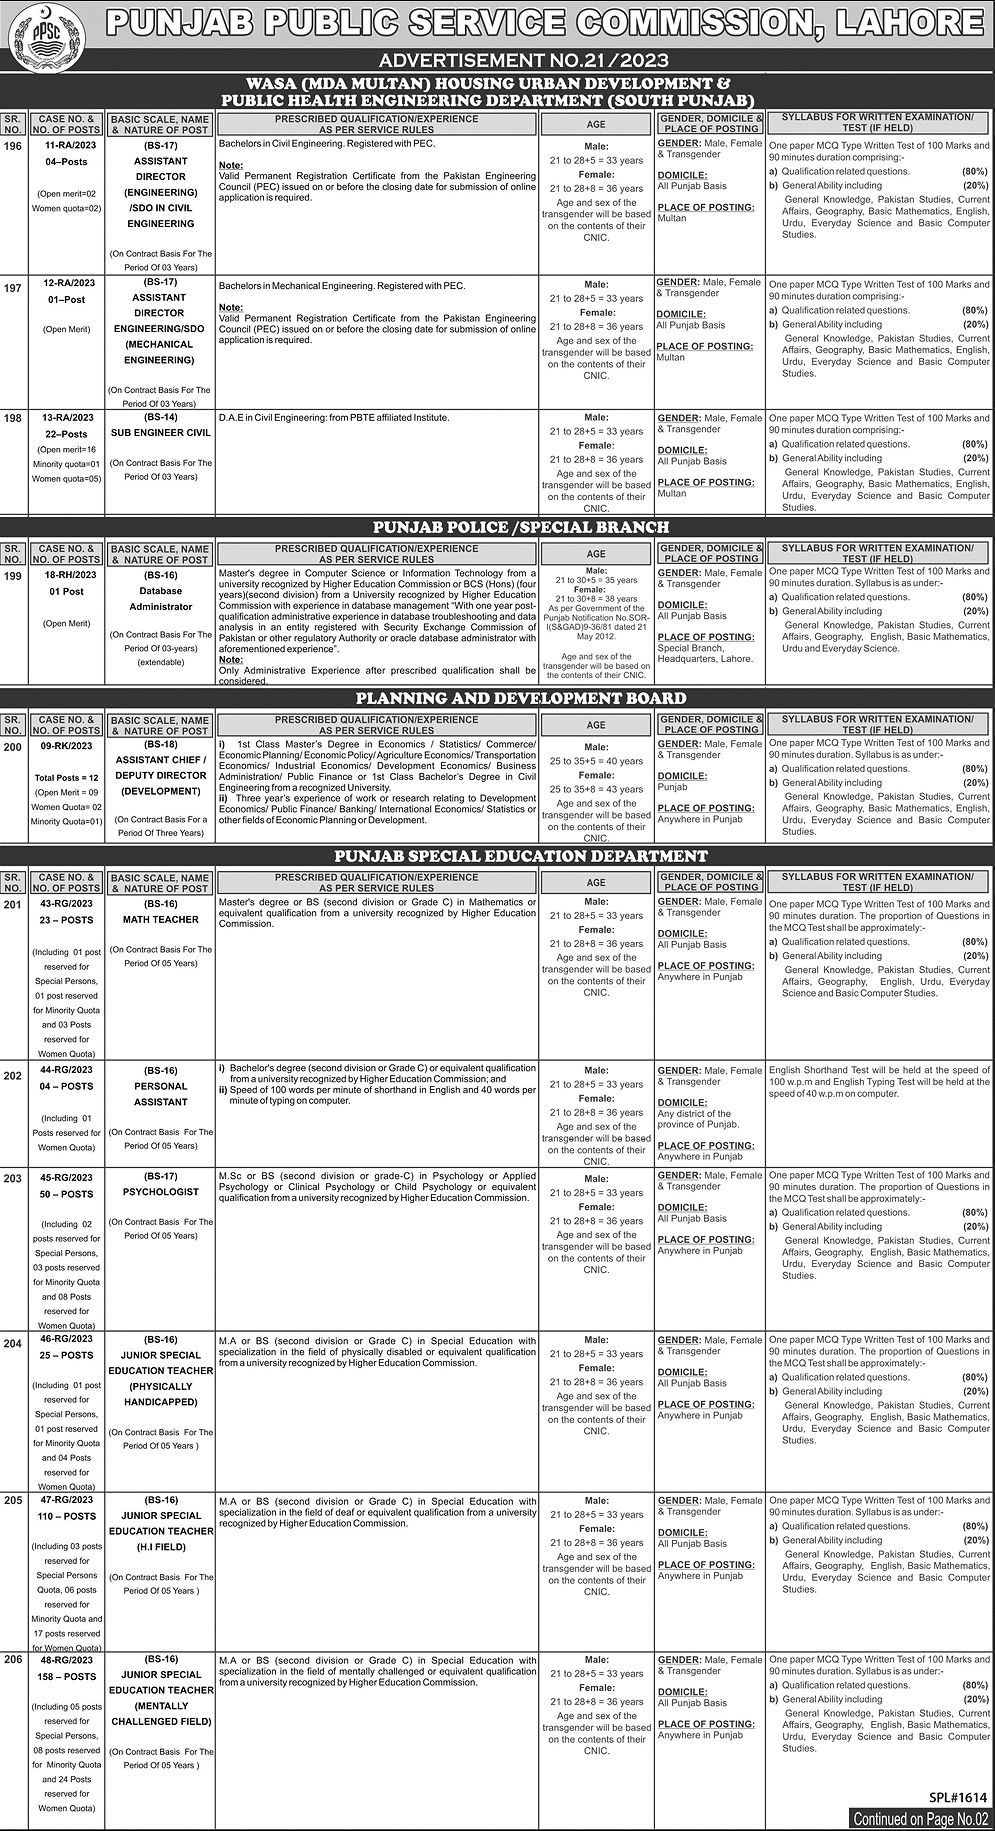 PPSC Punjab Public Service Commission Advertisement No. 21/2023 Jobs 2023 